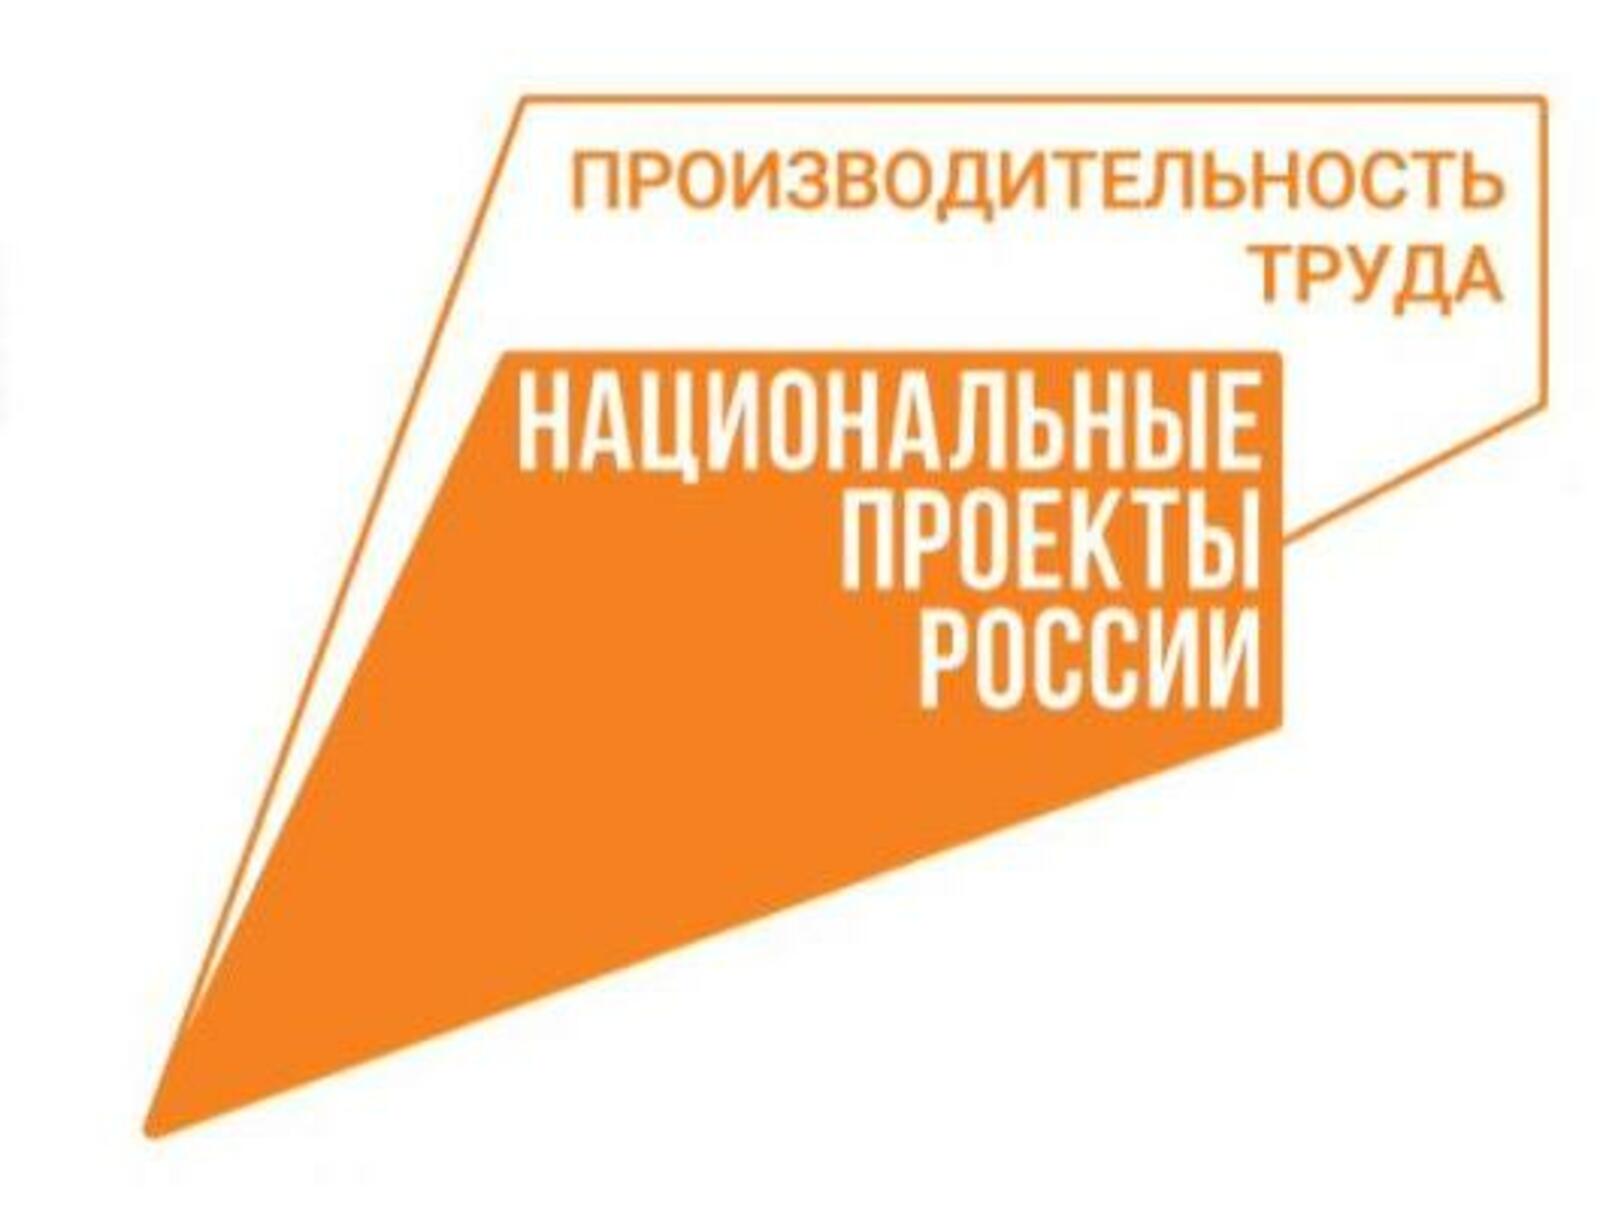 Башкортостан в числе регионов-лидеров по числу участников программы «Лидеры производительности»